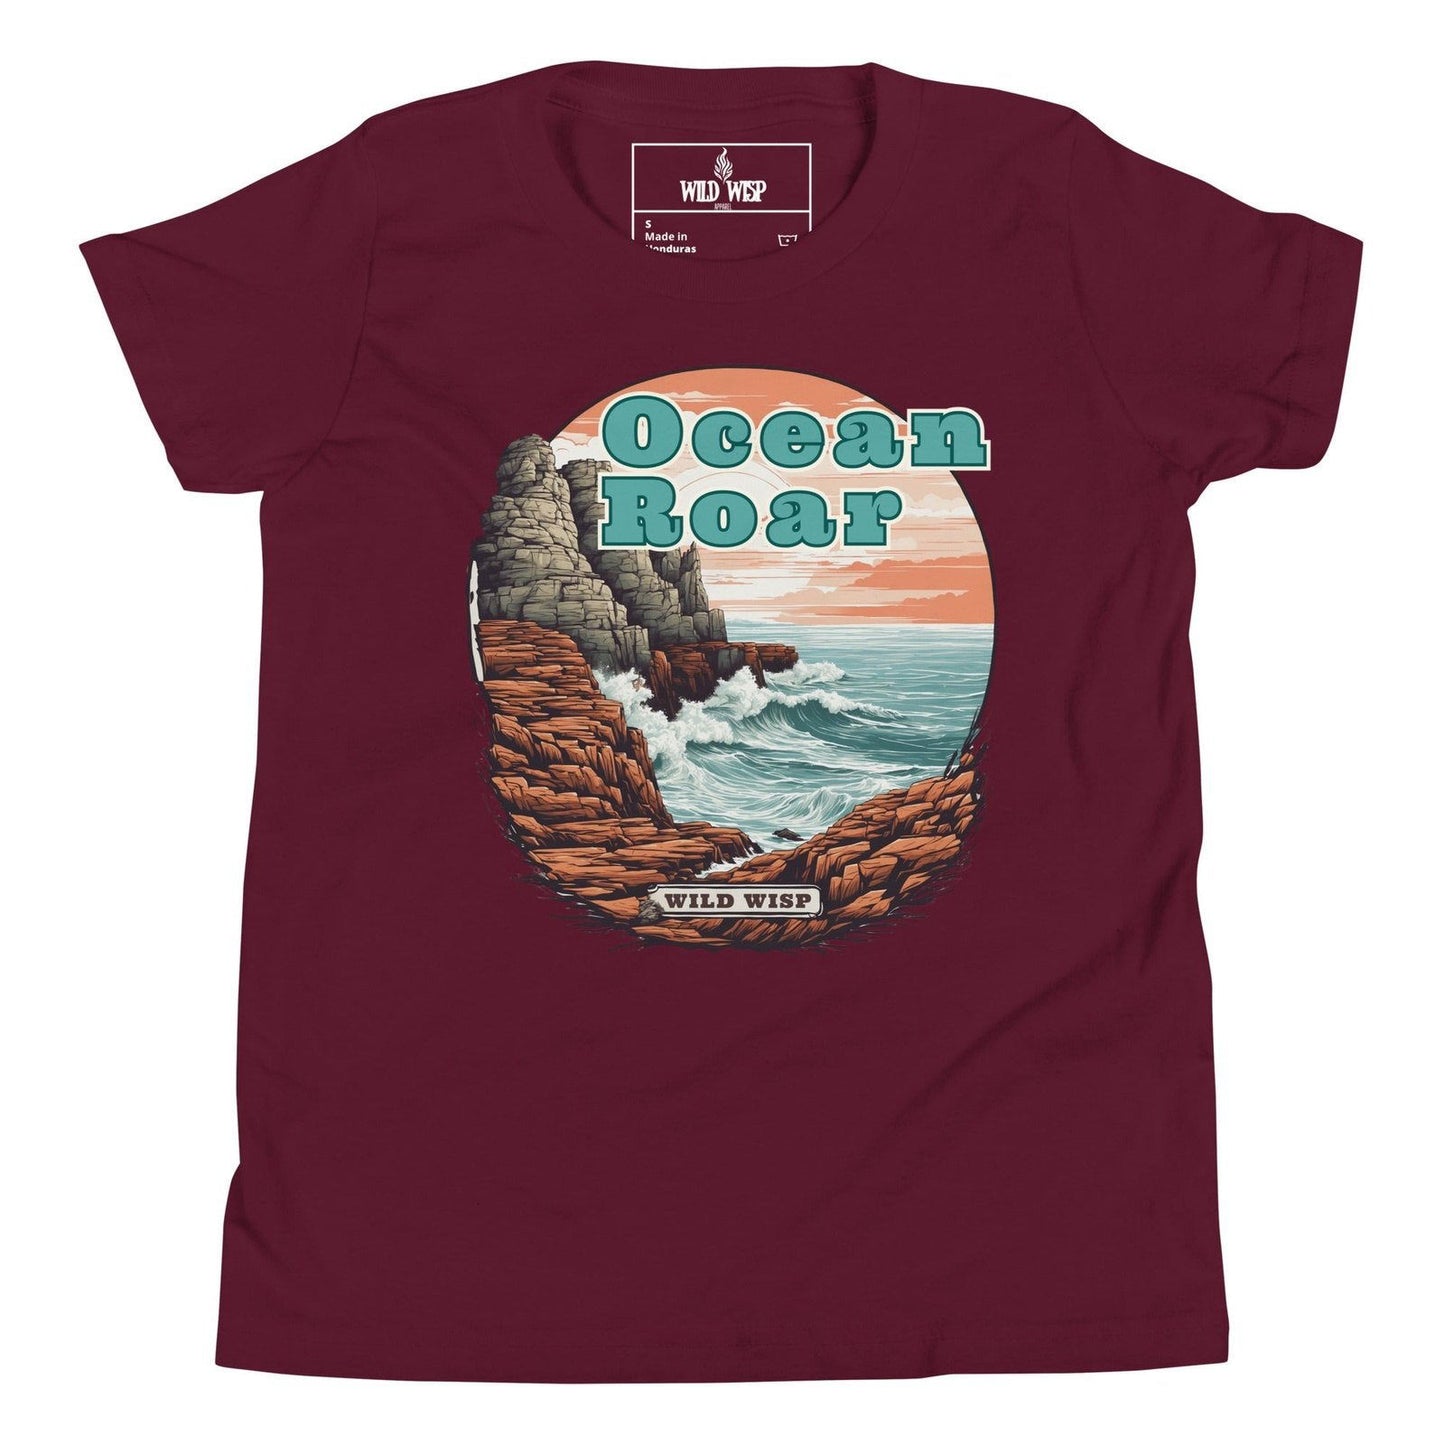 'Ocean Roar' Youth Short Sleeve T-Shirt - Wild Wisp Apparel